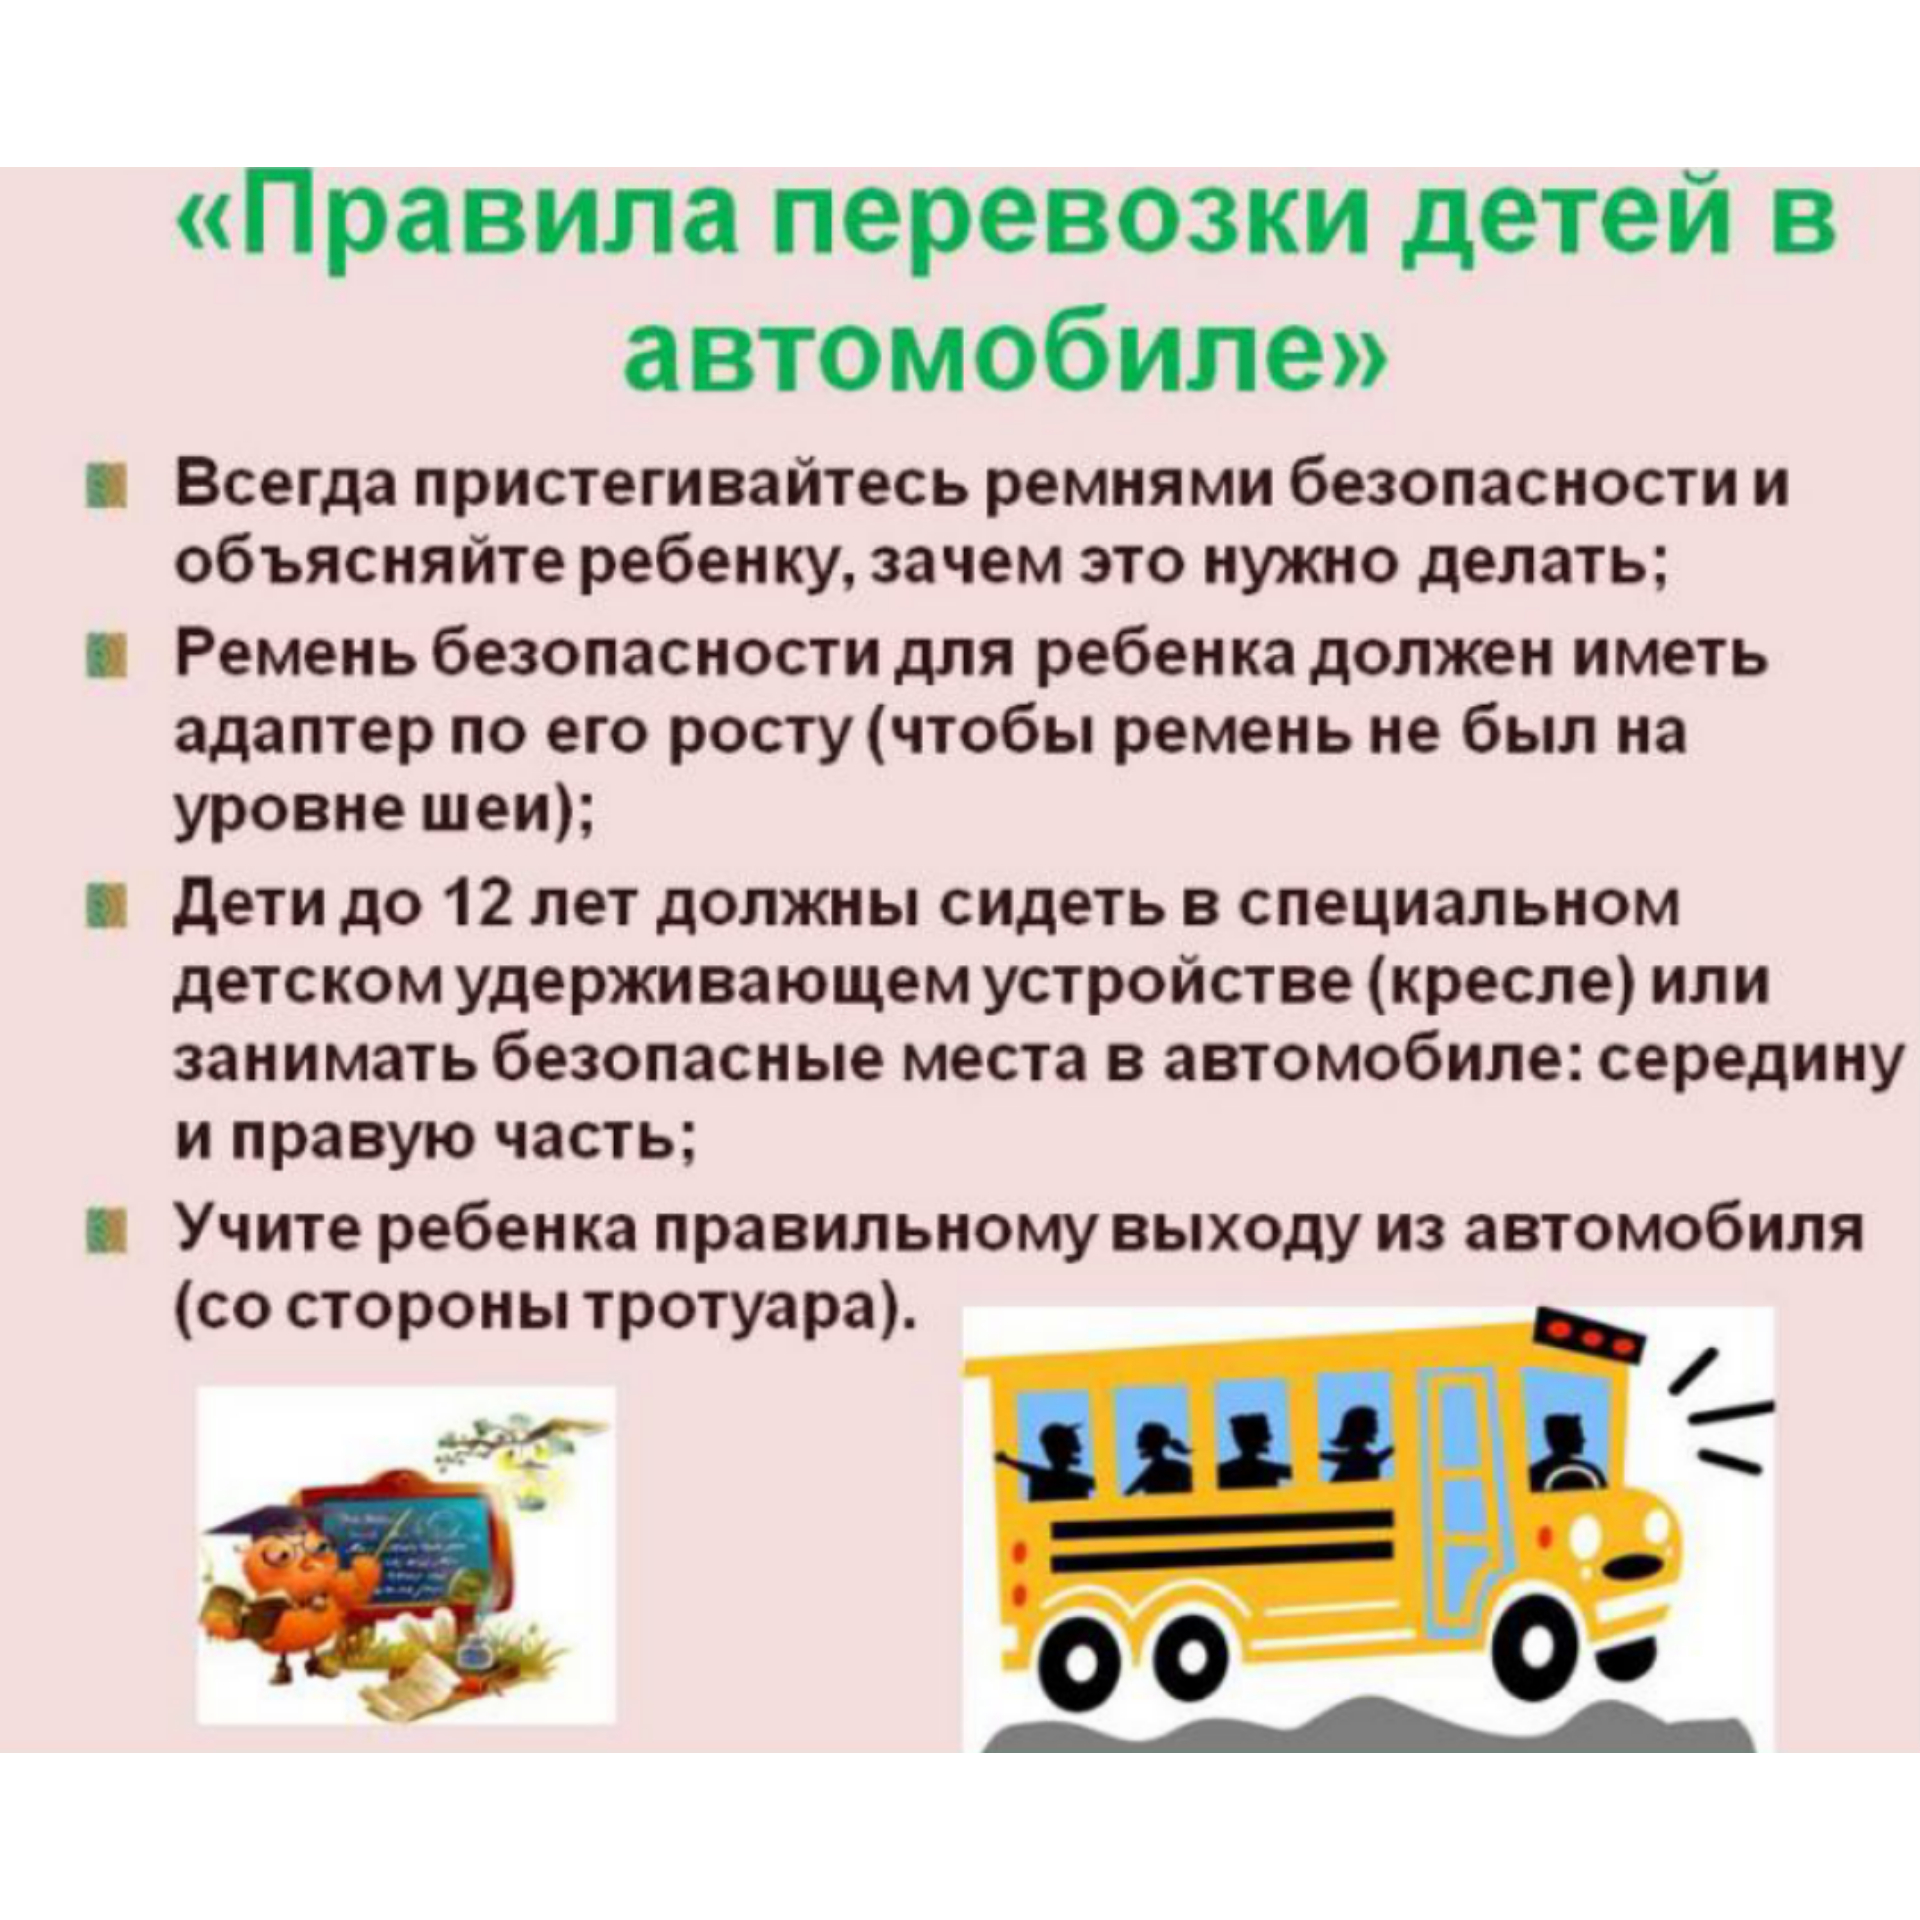 Правила безопасности в автомобиле для детей